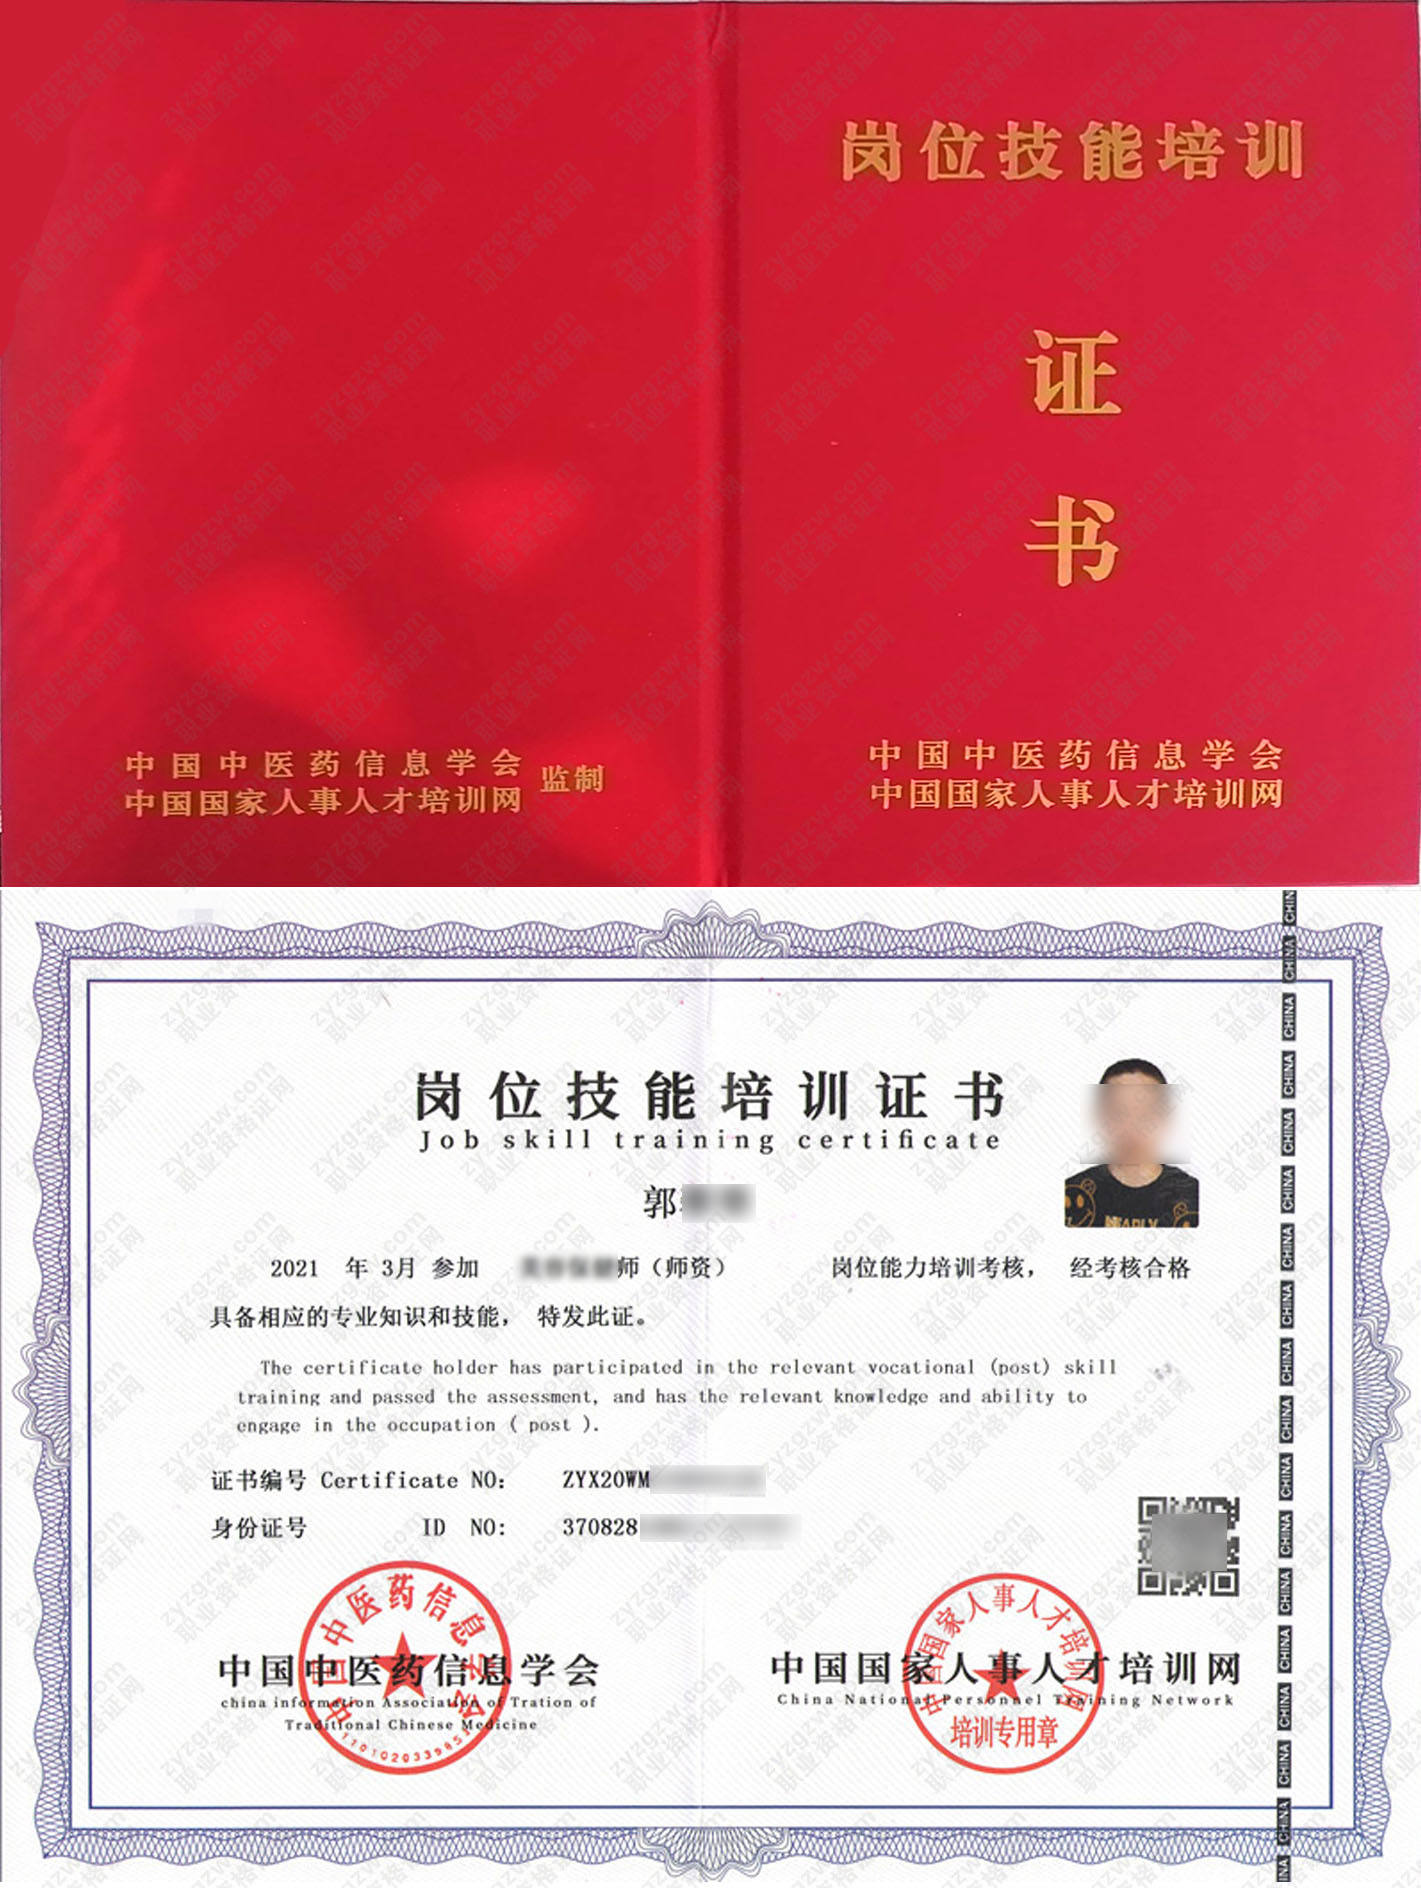 中国国家人事人才培训网 康复理疗师 岗位技能培训证书